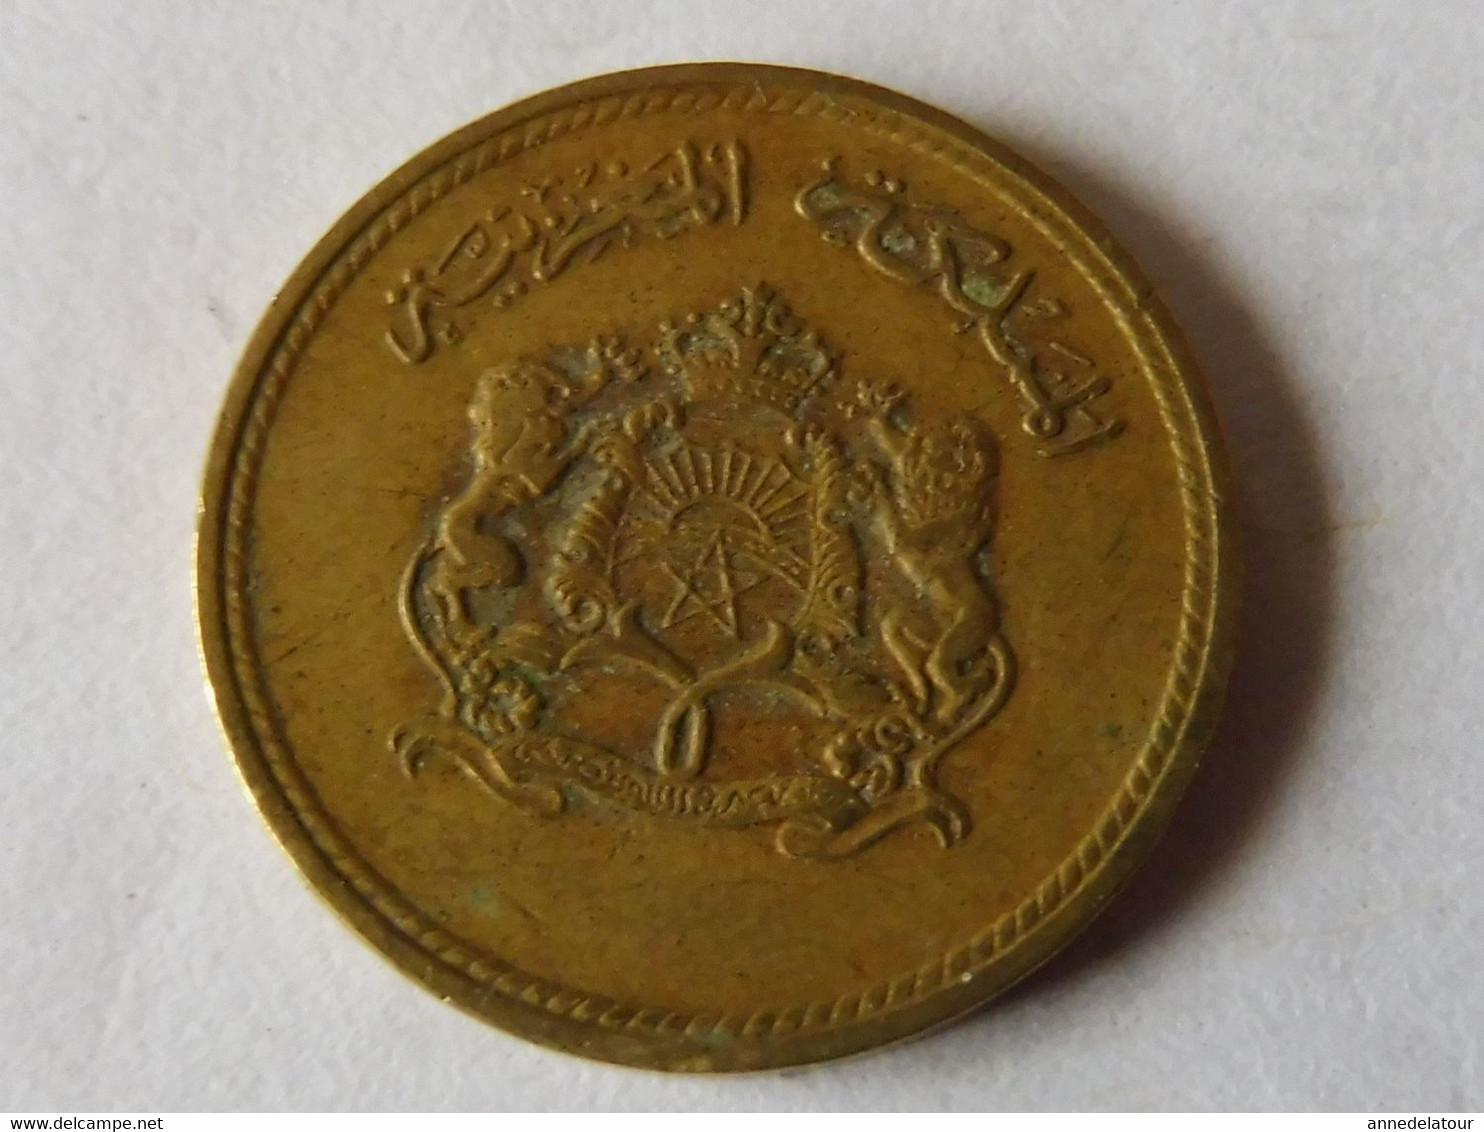 Pièce De Monnaie 1974 - 1394  (5 Centimes 1974 Du Royaume Du Maroc) - Onbekende Oorsprong